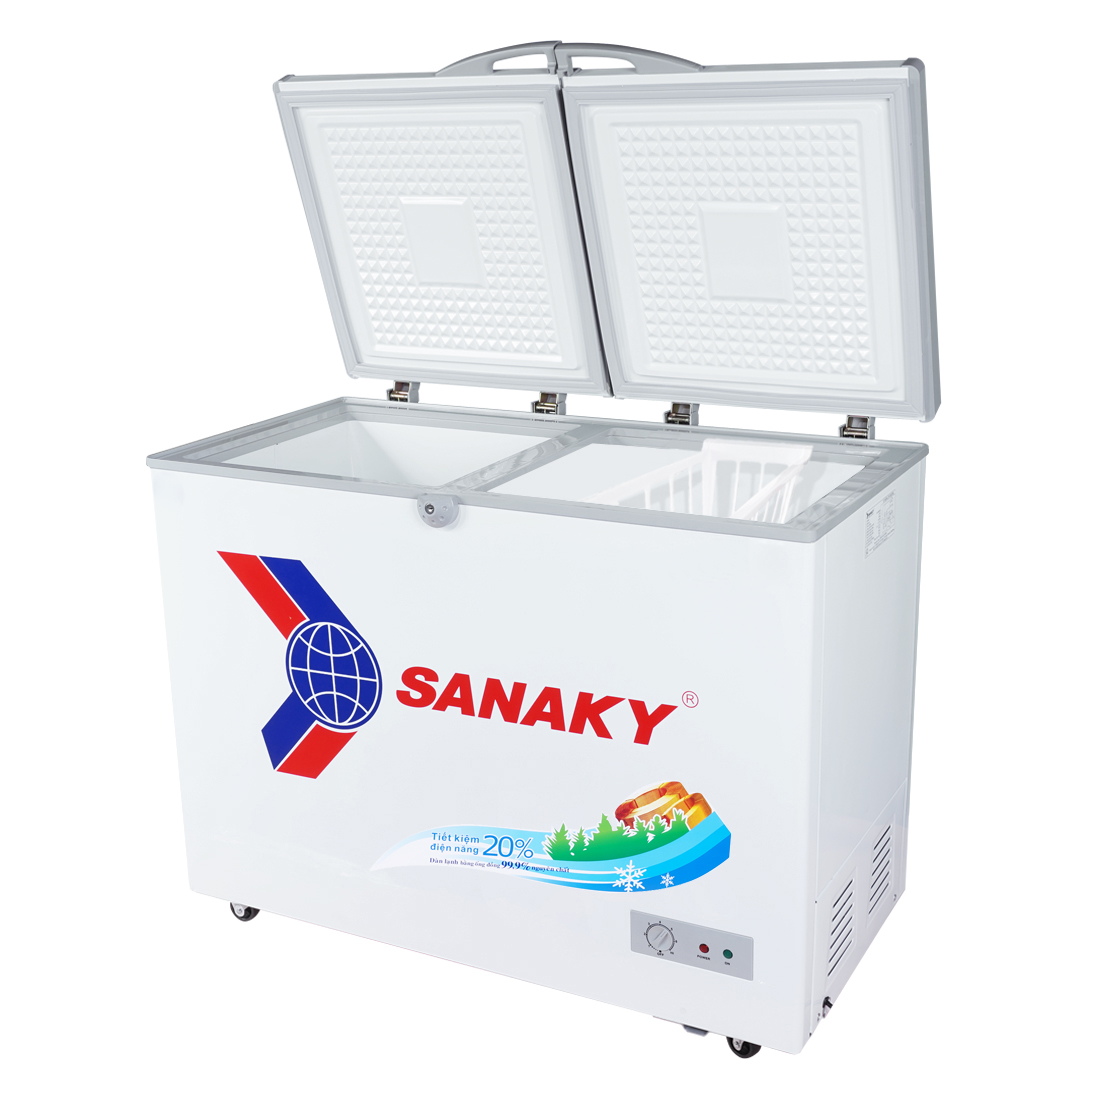 Tủ Đông Sanaky VH-2899A1